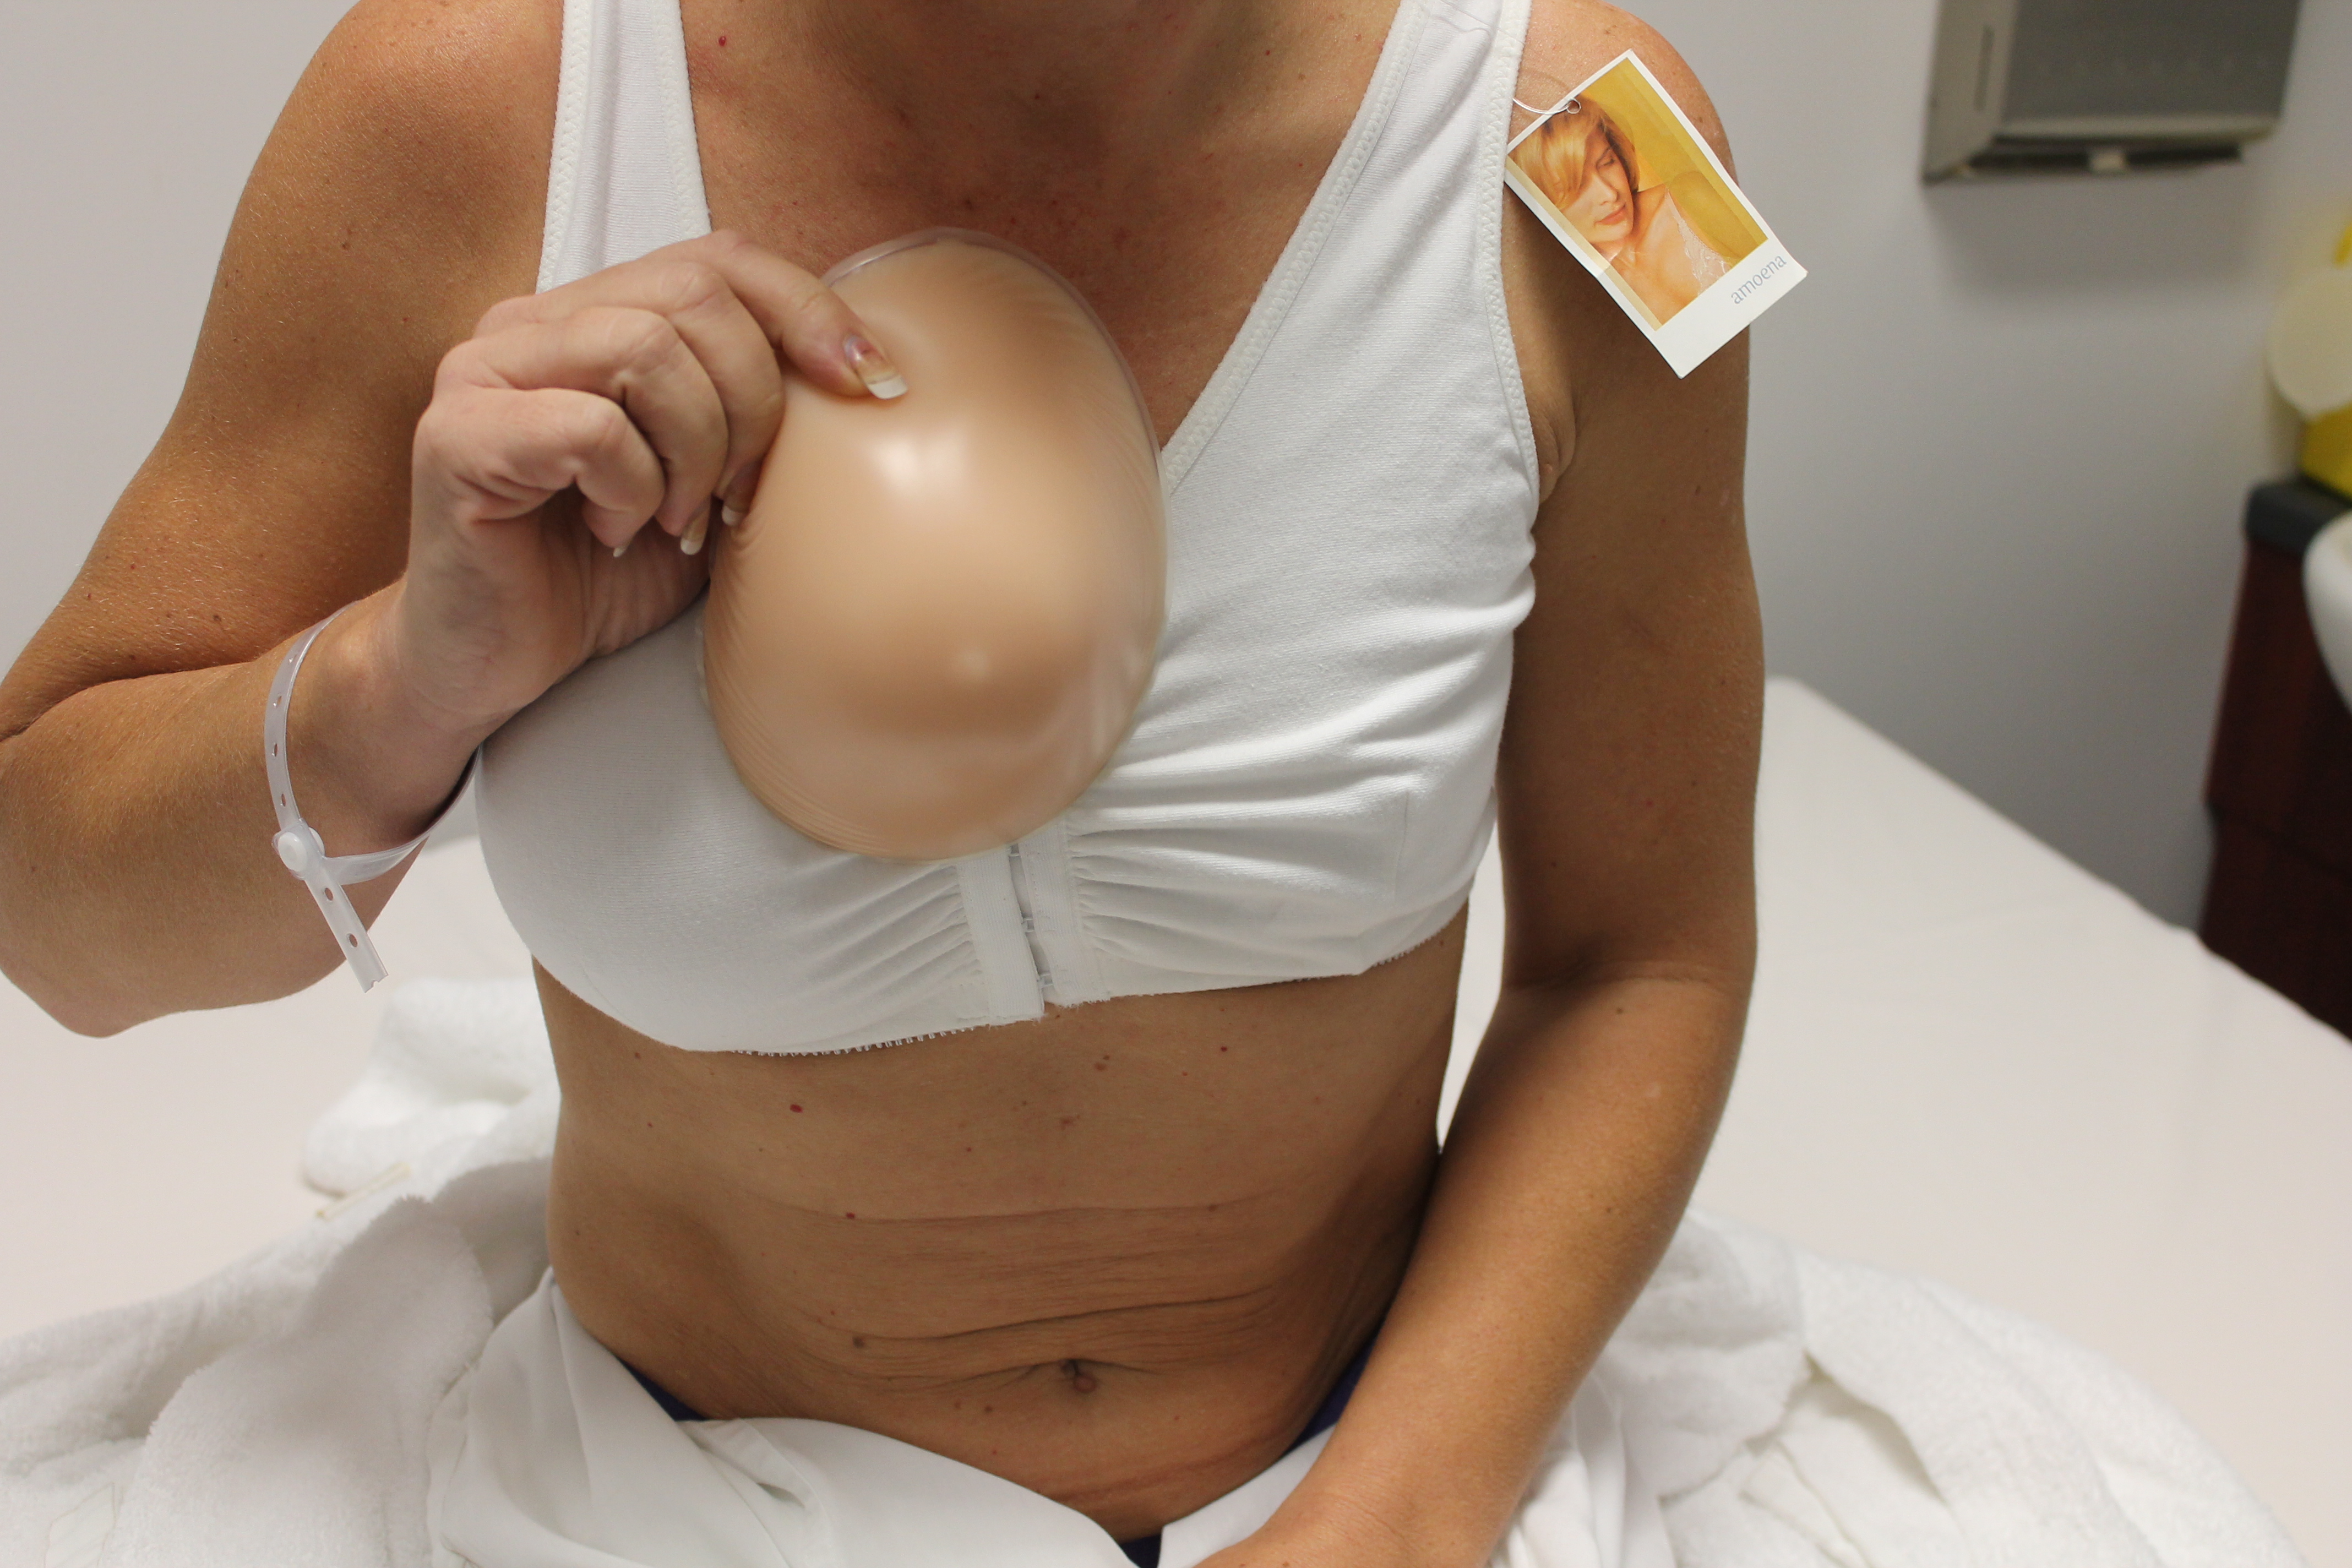 уменьшение груди во время беременности фото 87